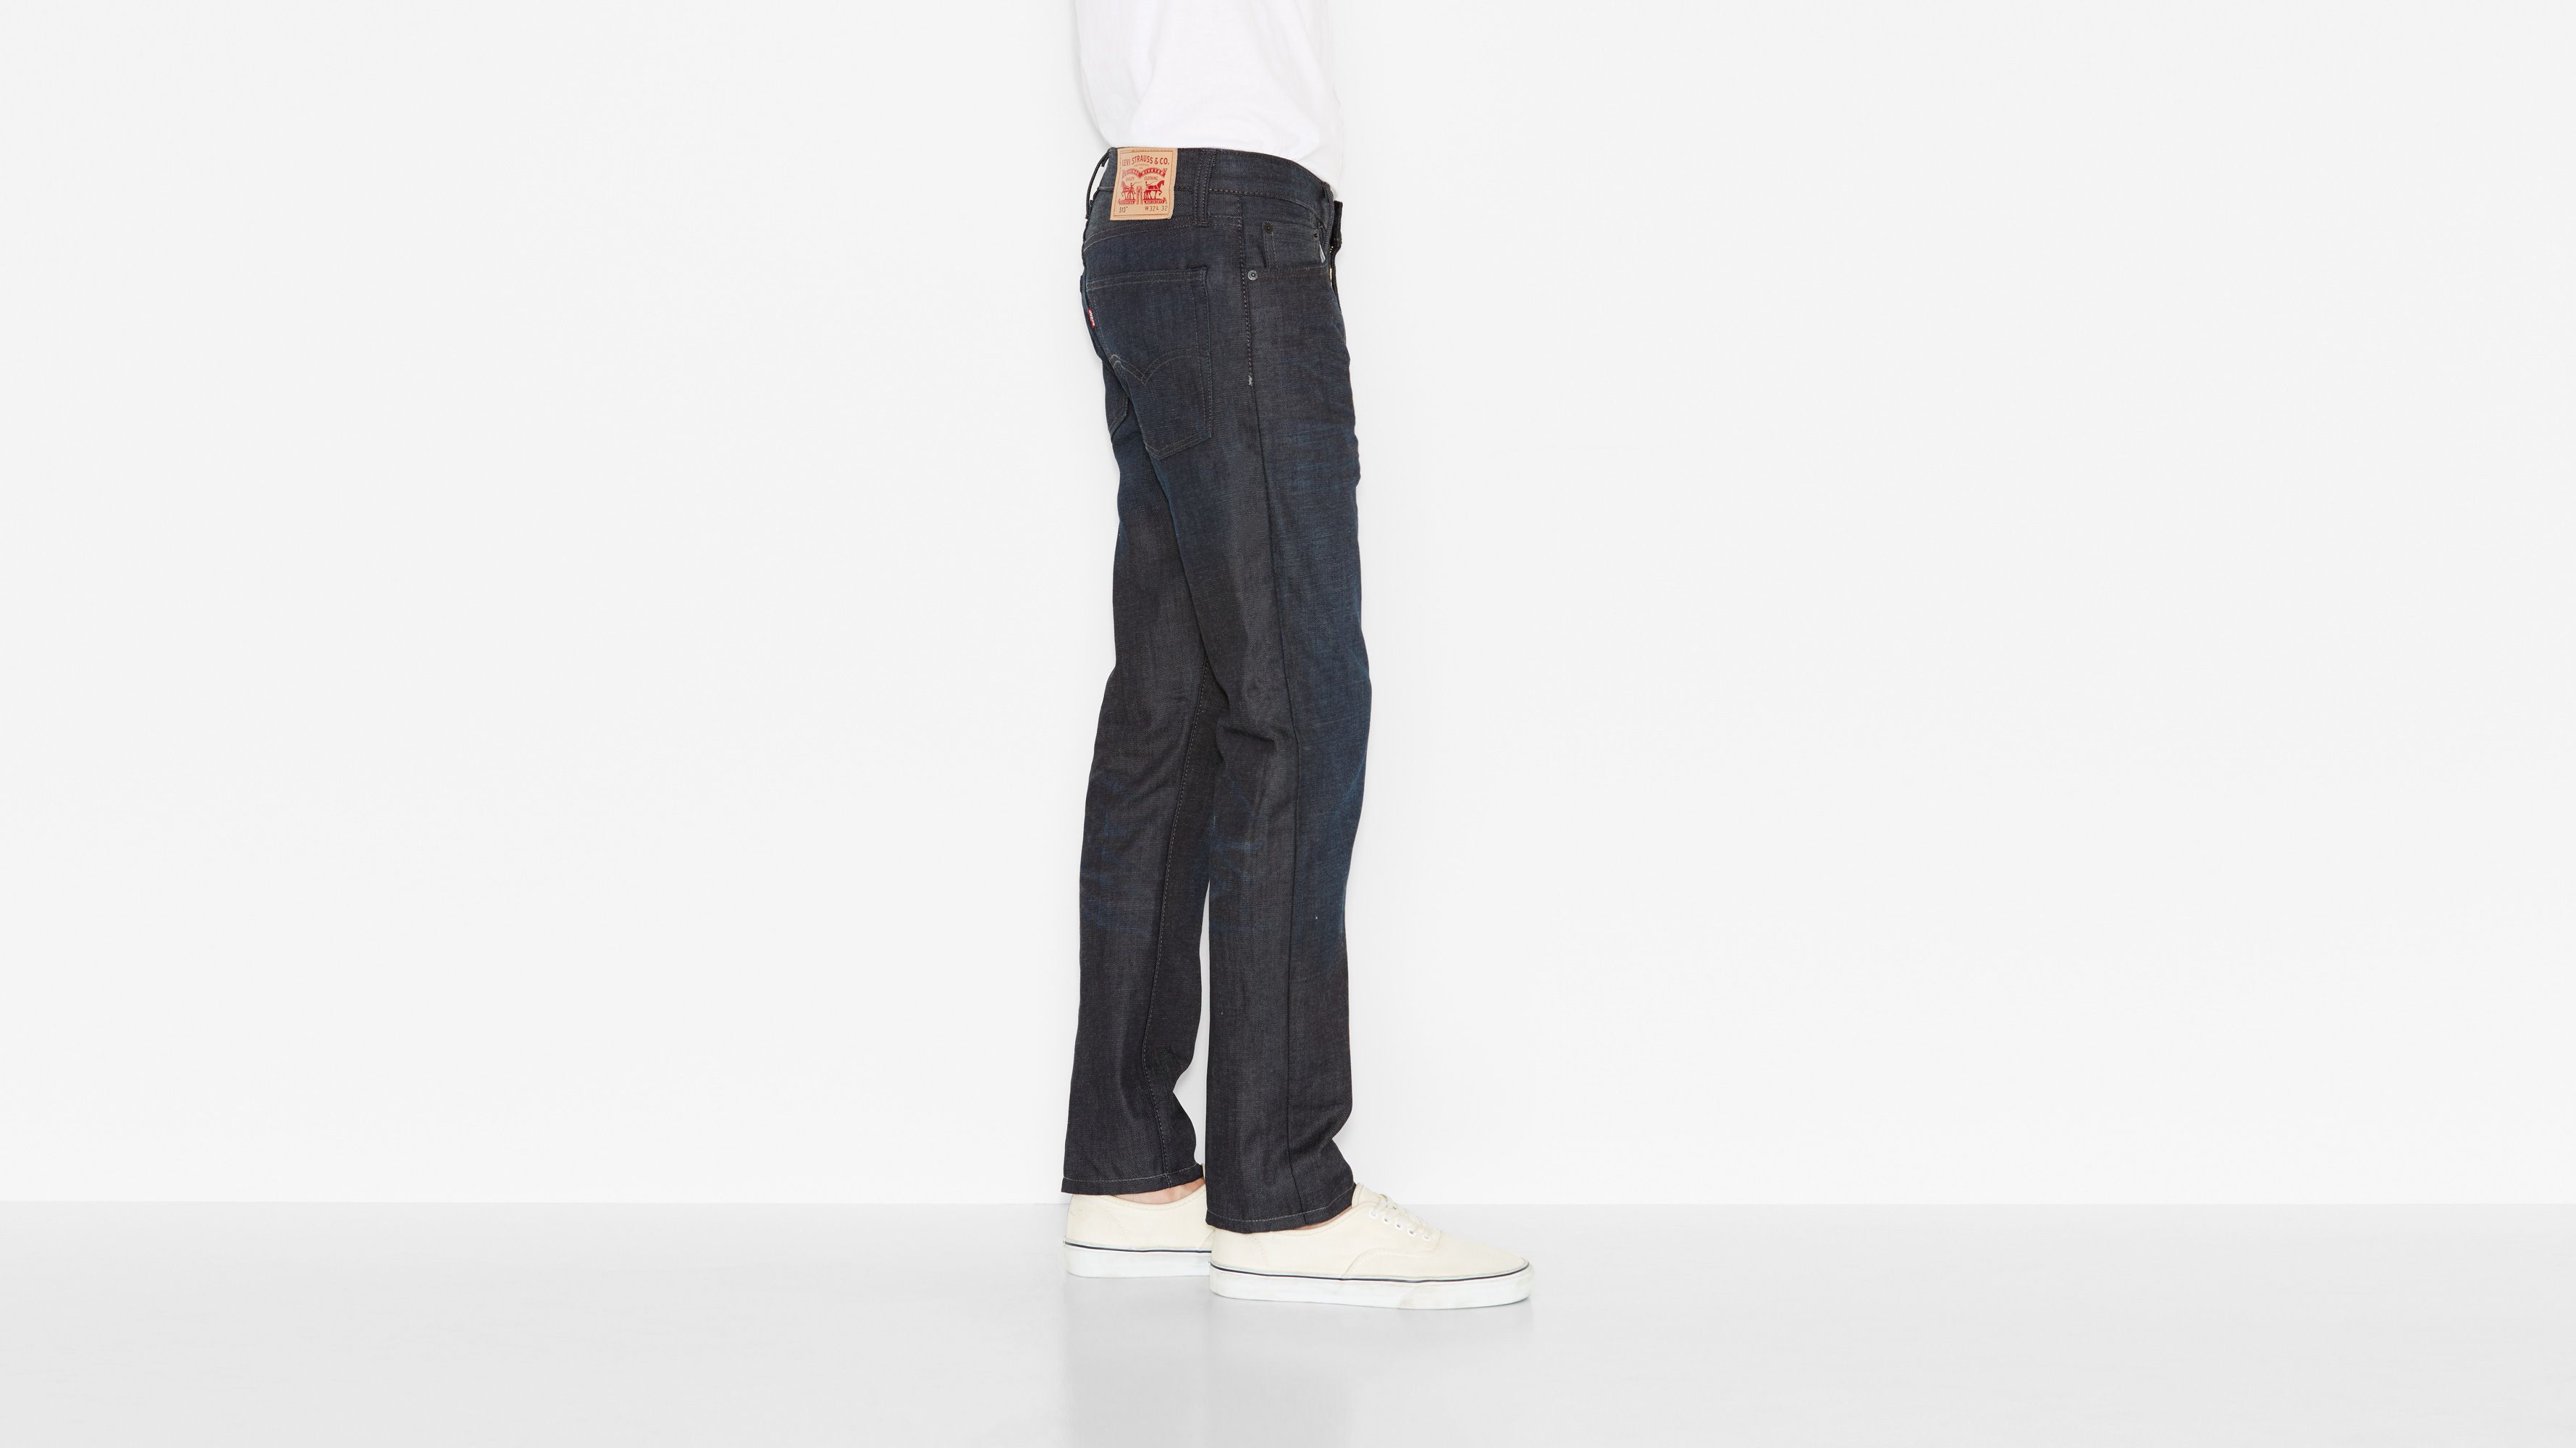 513 levis jeans